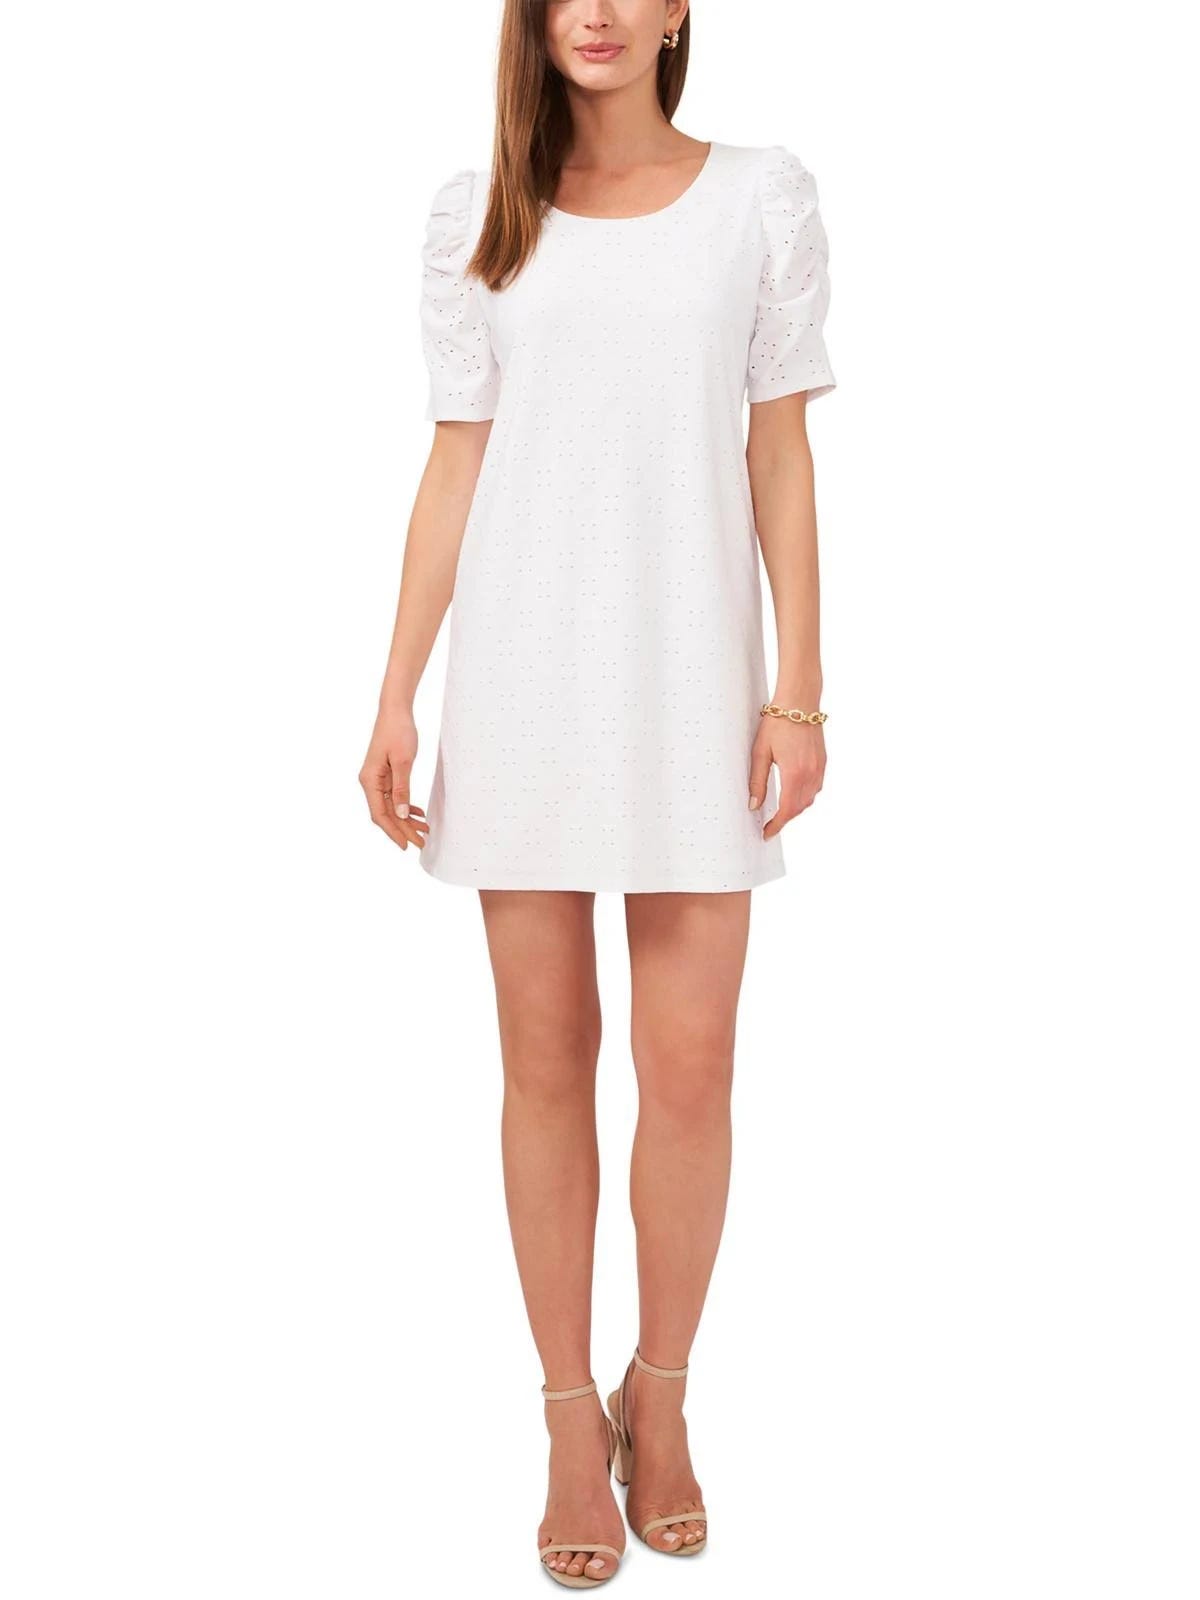 Fashionable White Eyelet Puff Sleeve Shift Dress | Image